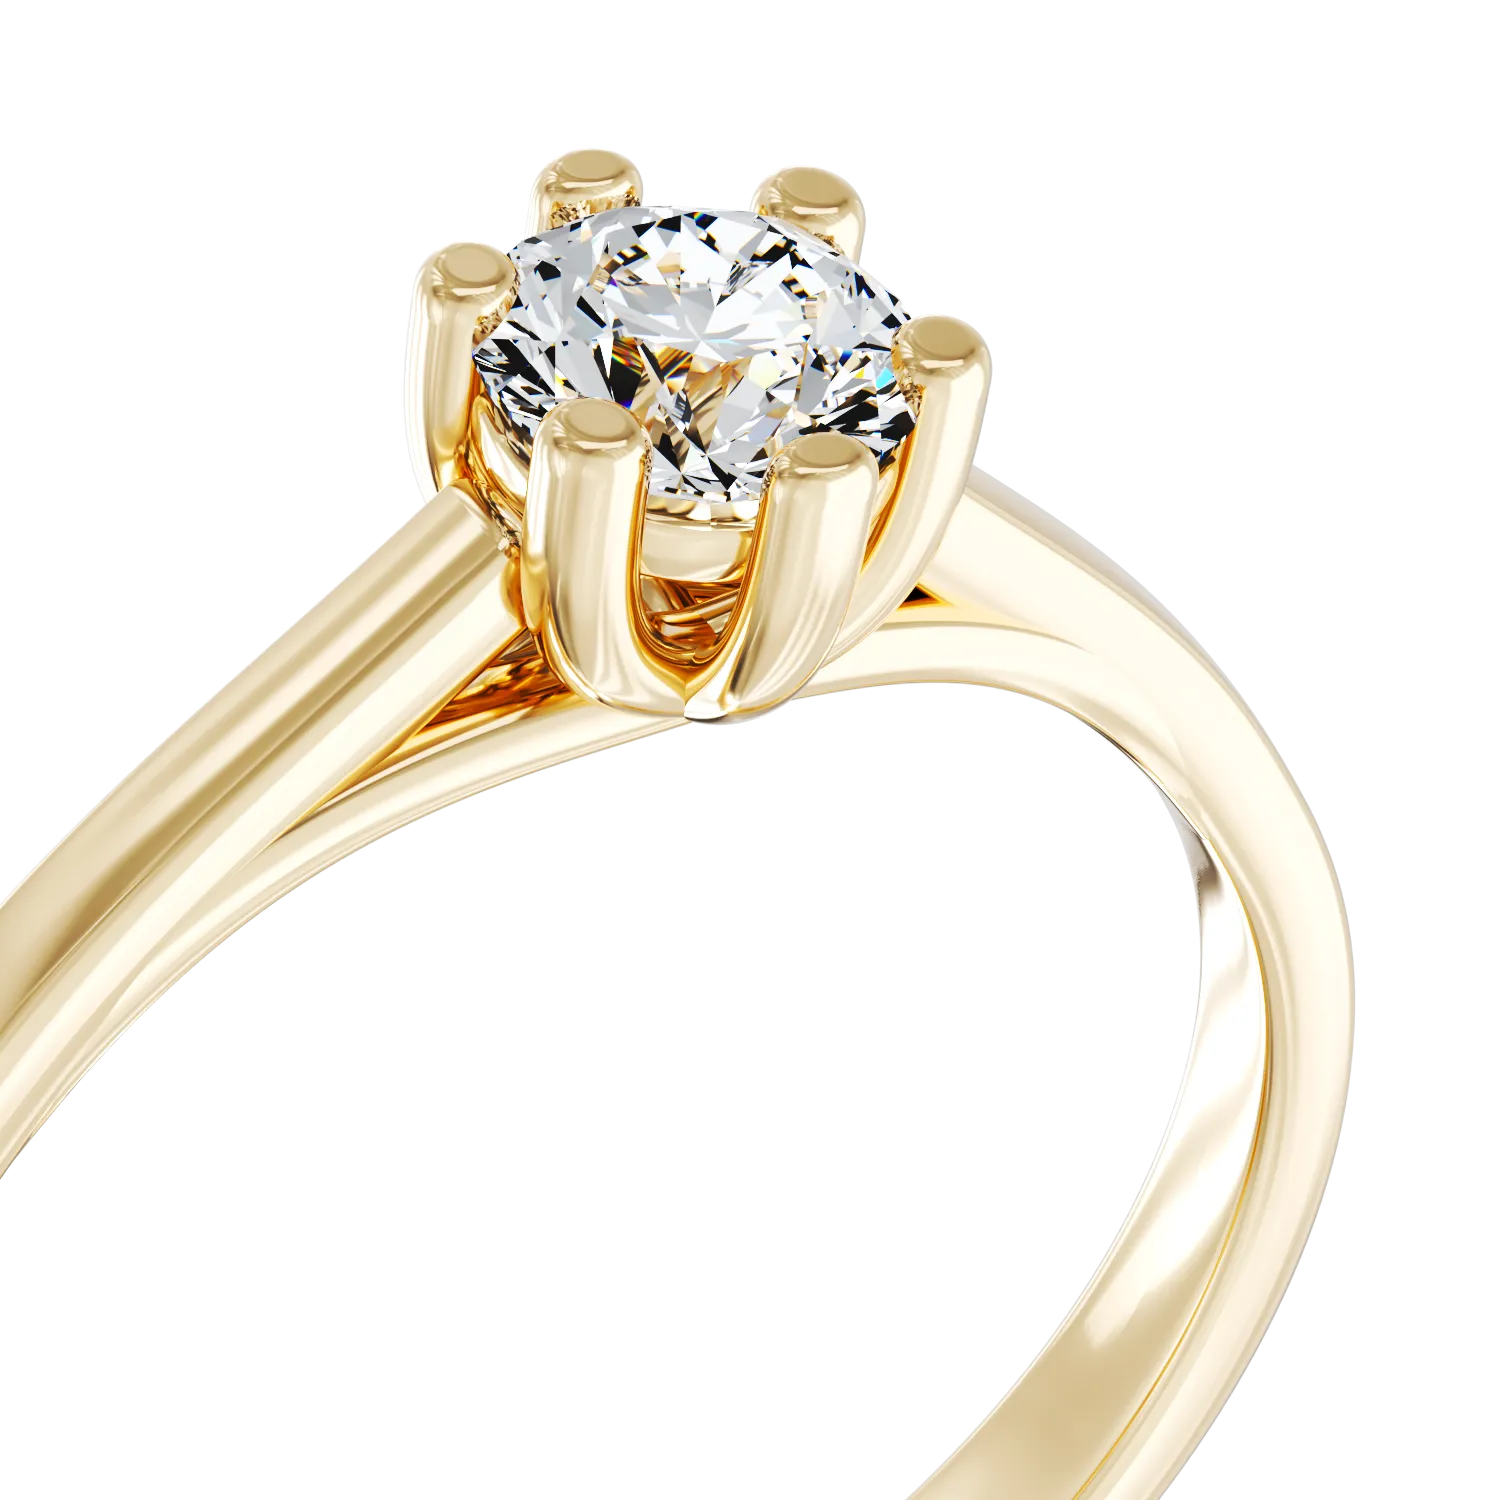 Eljegyzési gyűrű 18K-os sárga aranyból 0,35ct gyémánttal. Gramm: 4,2